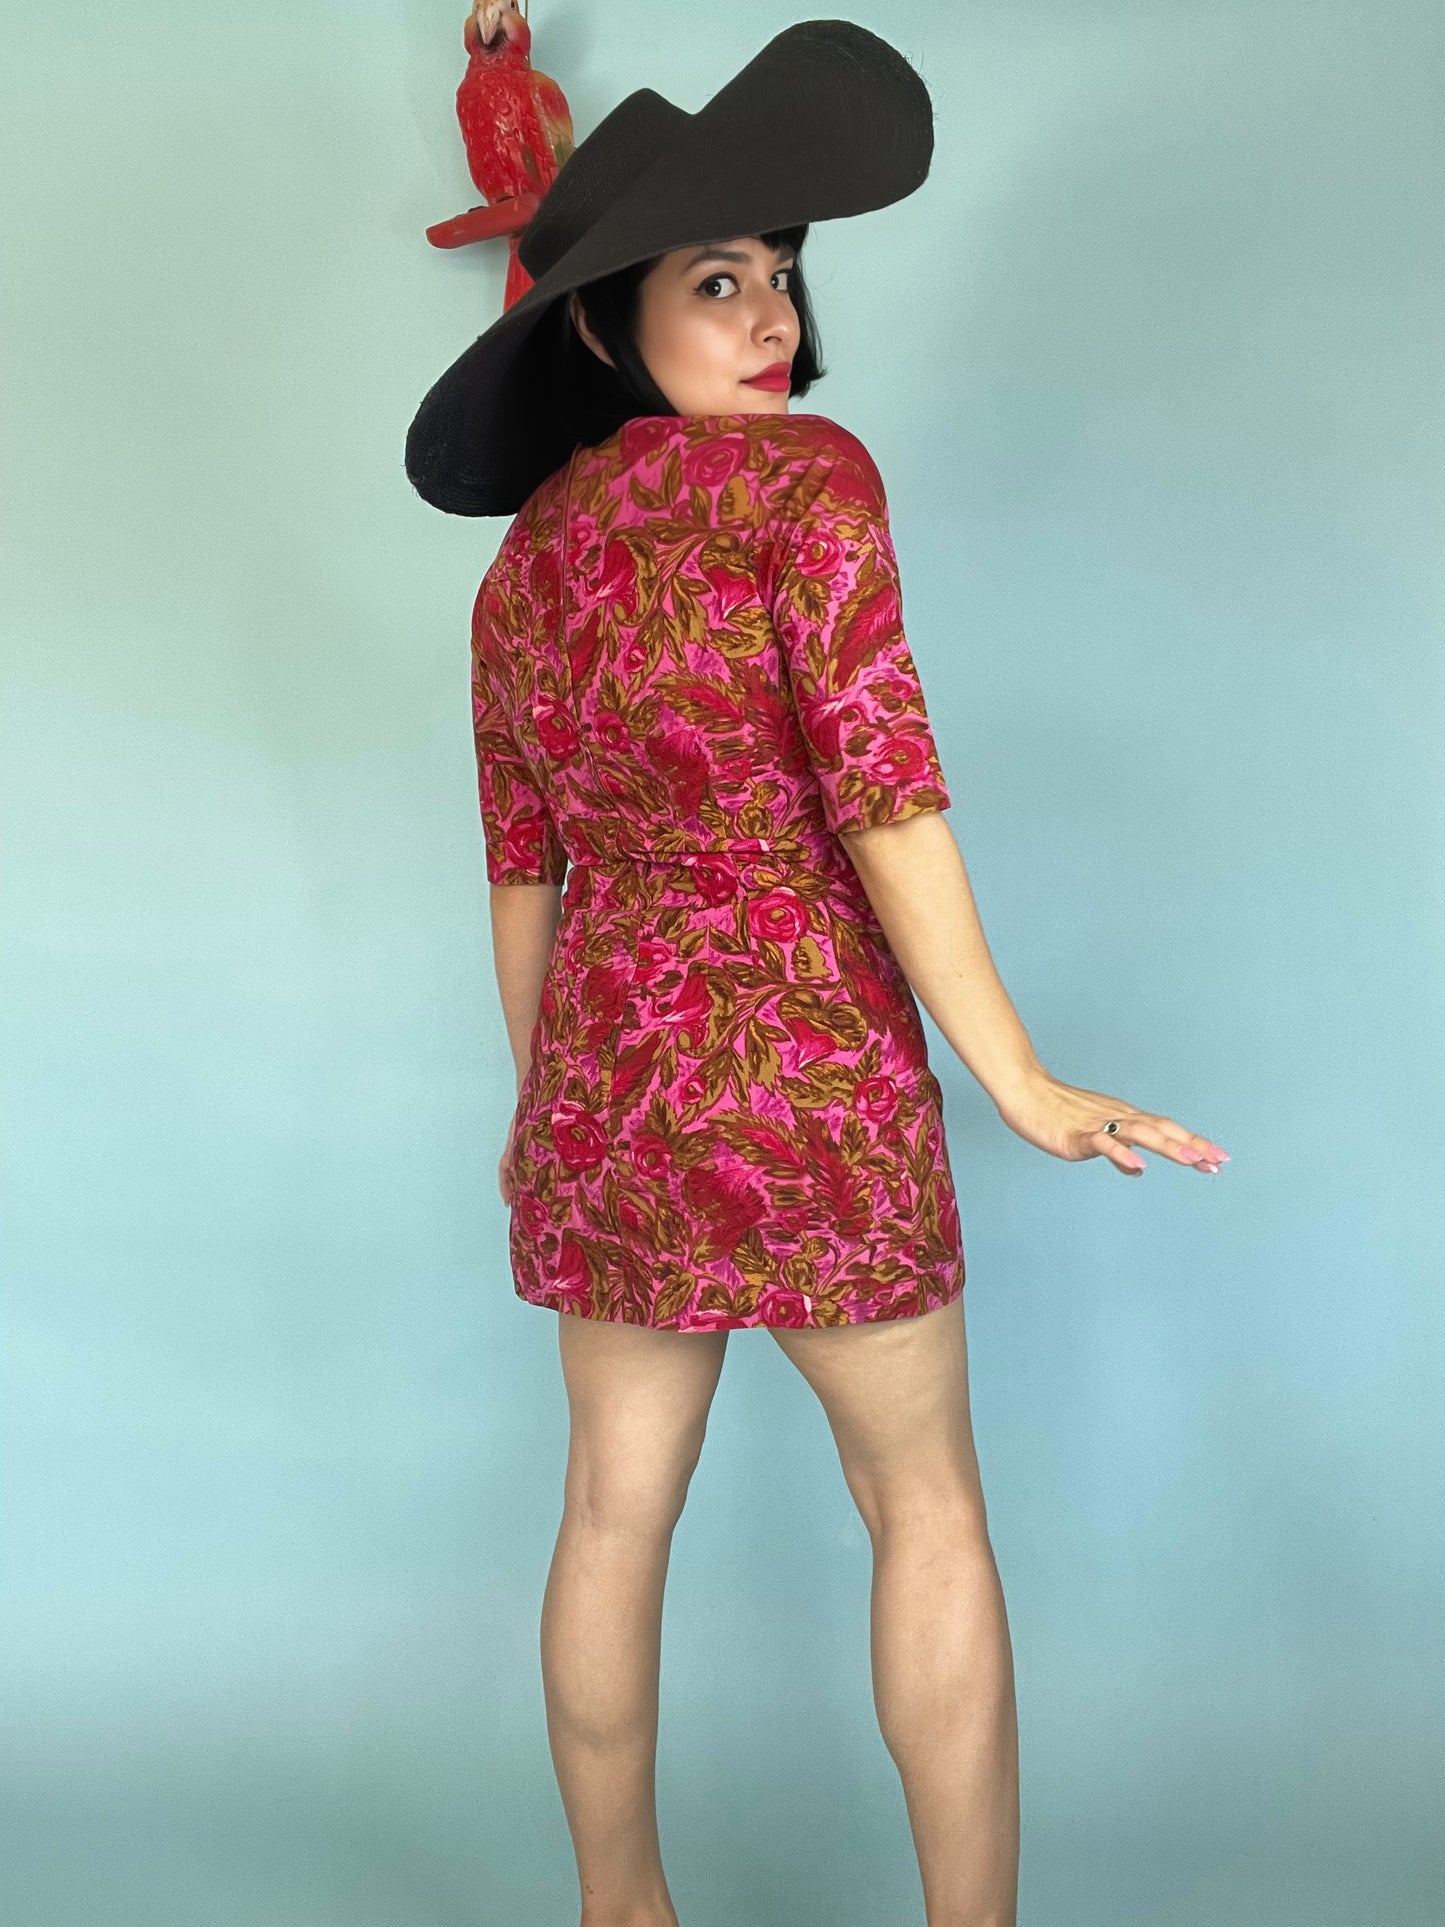 Vintage 60s / 70s "Tori Richard Honolulu" Mini Dress Tunic Blouse Fits Sizes XS-S